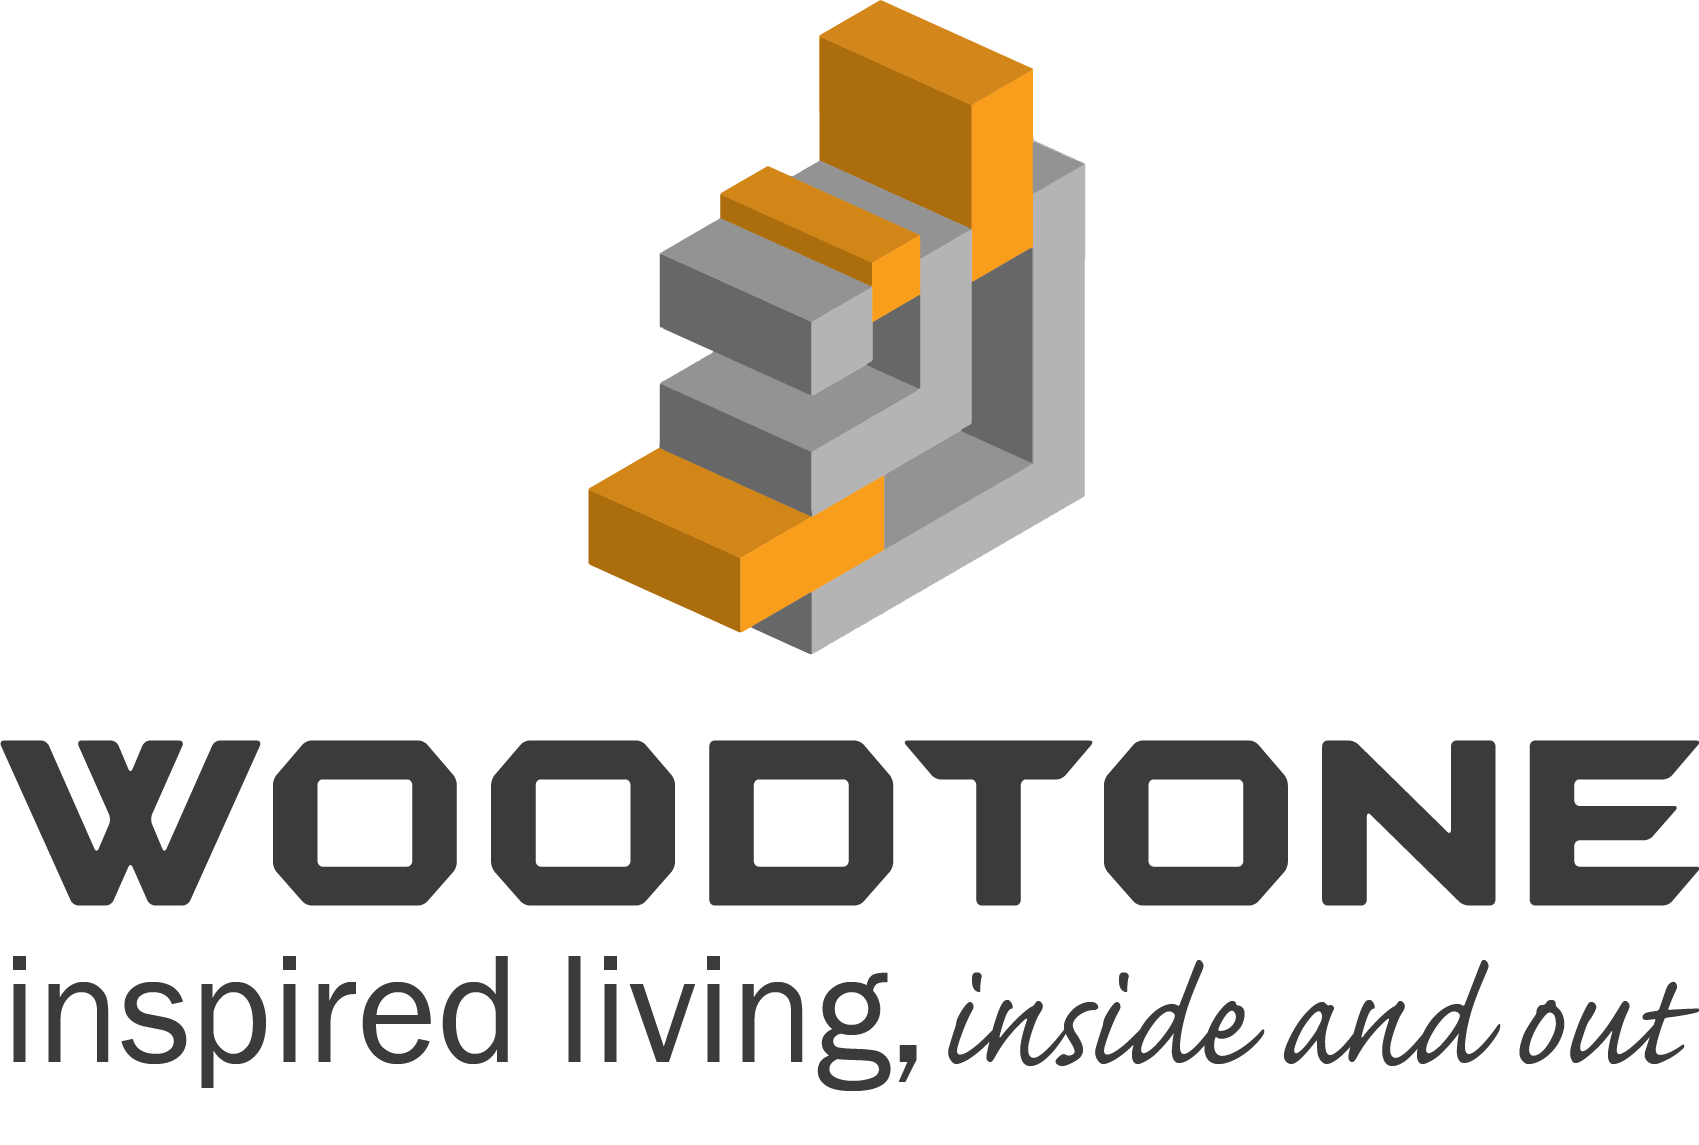 Woodtone logo